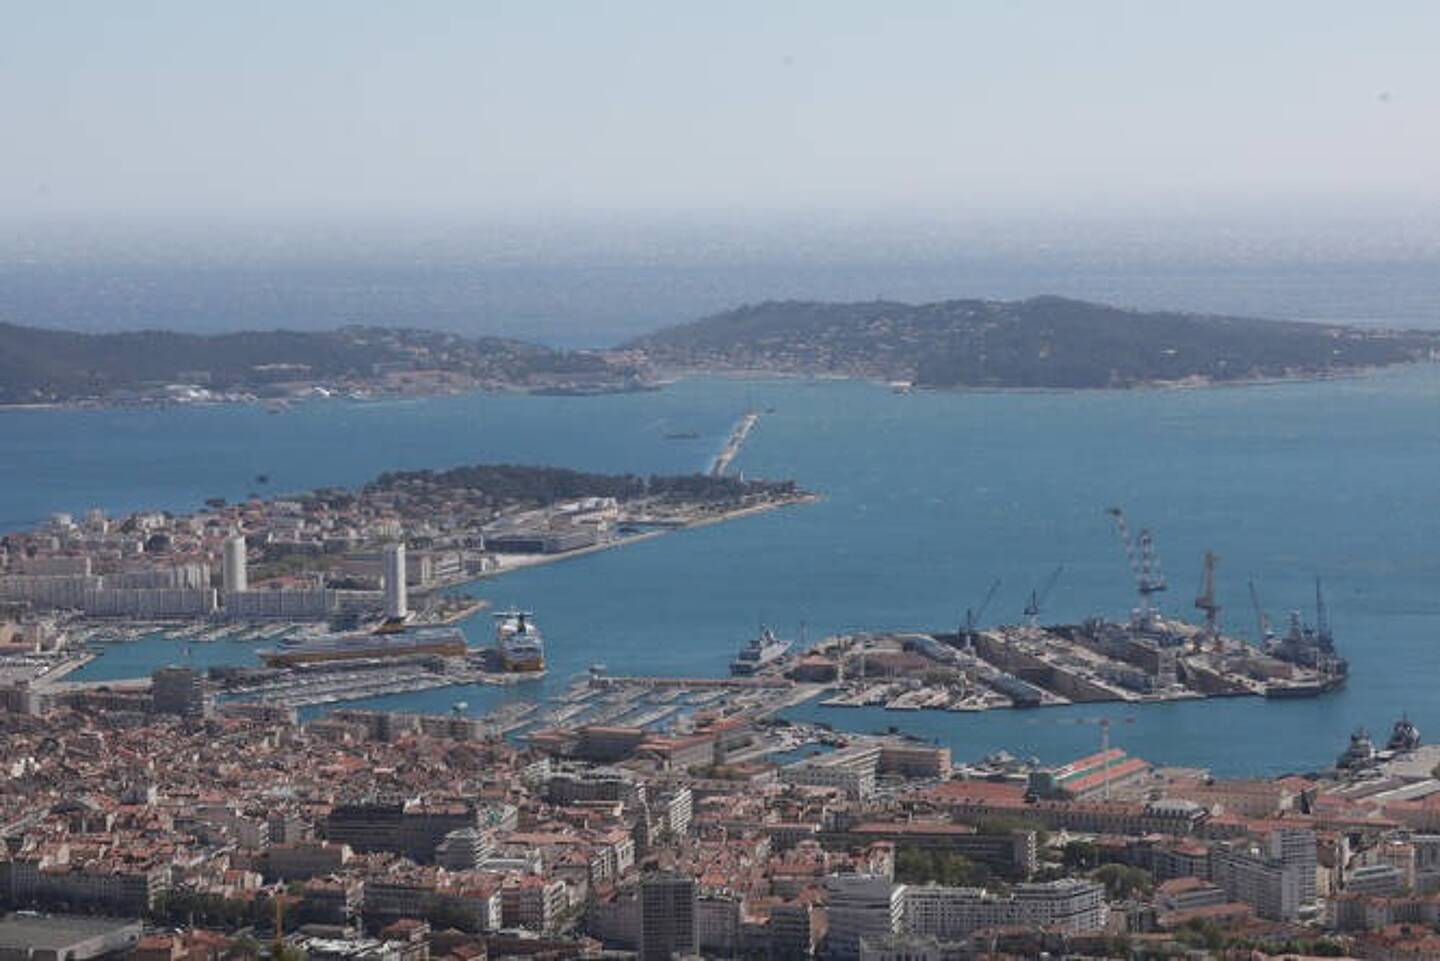 Le maire de Toulon a détaillé quelques aménagements d’envergure qui doivent voir le jour sur le littoral, entre la tour Royale et les abords du stade Mayol.